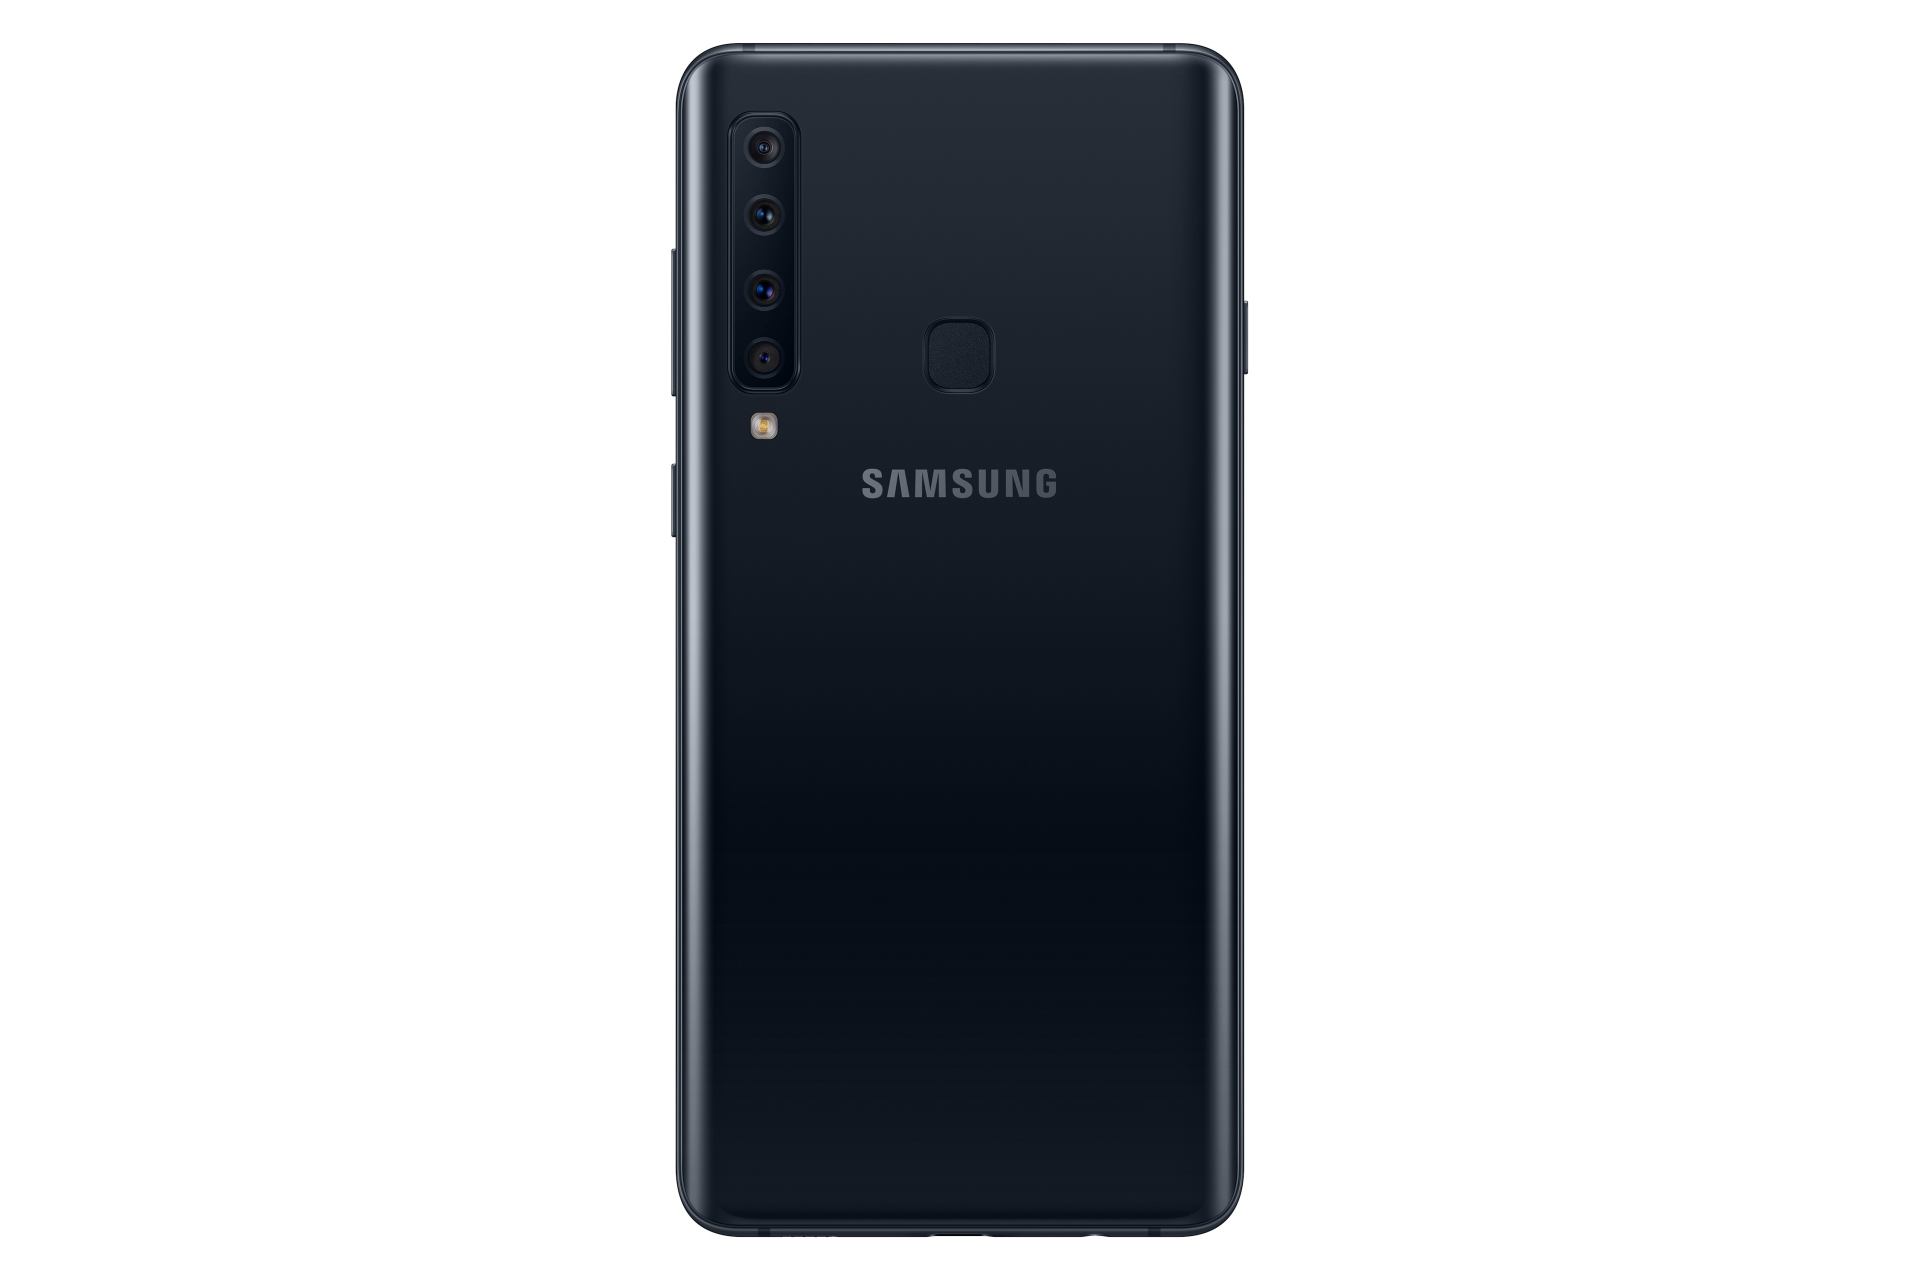 Samsung Galaxy A9, precio, características y opiniones